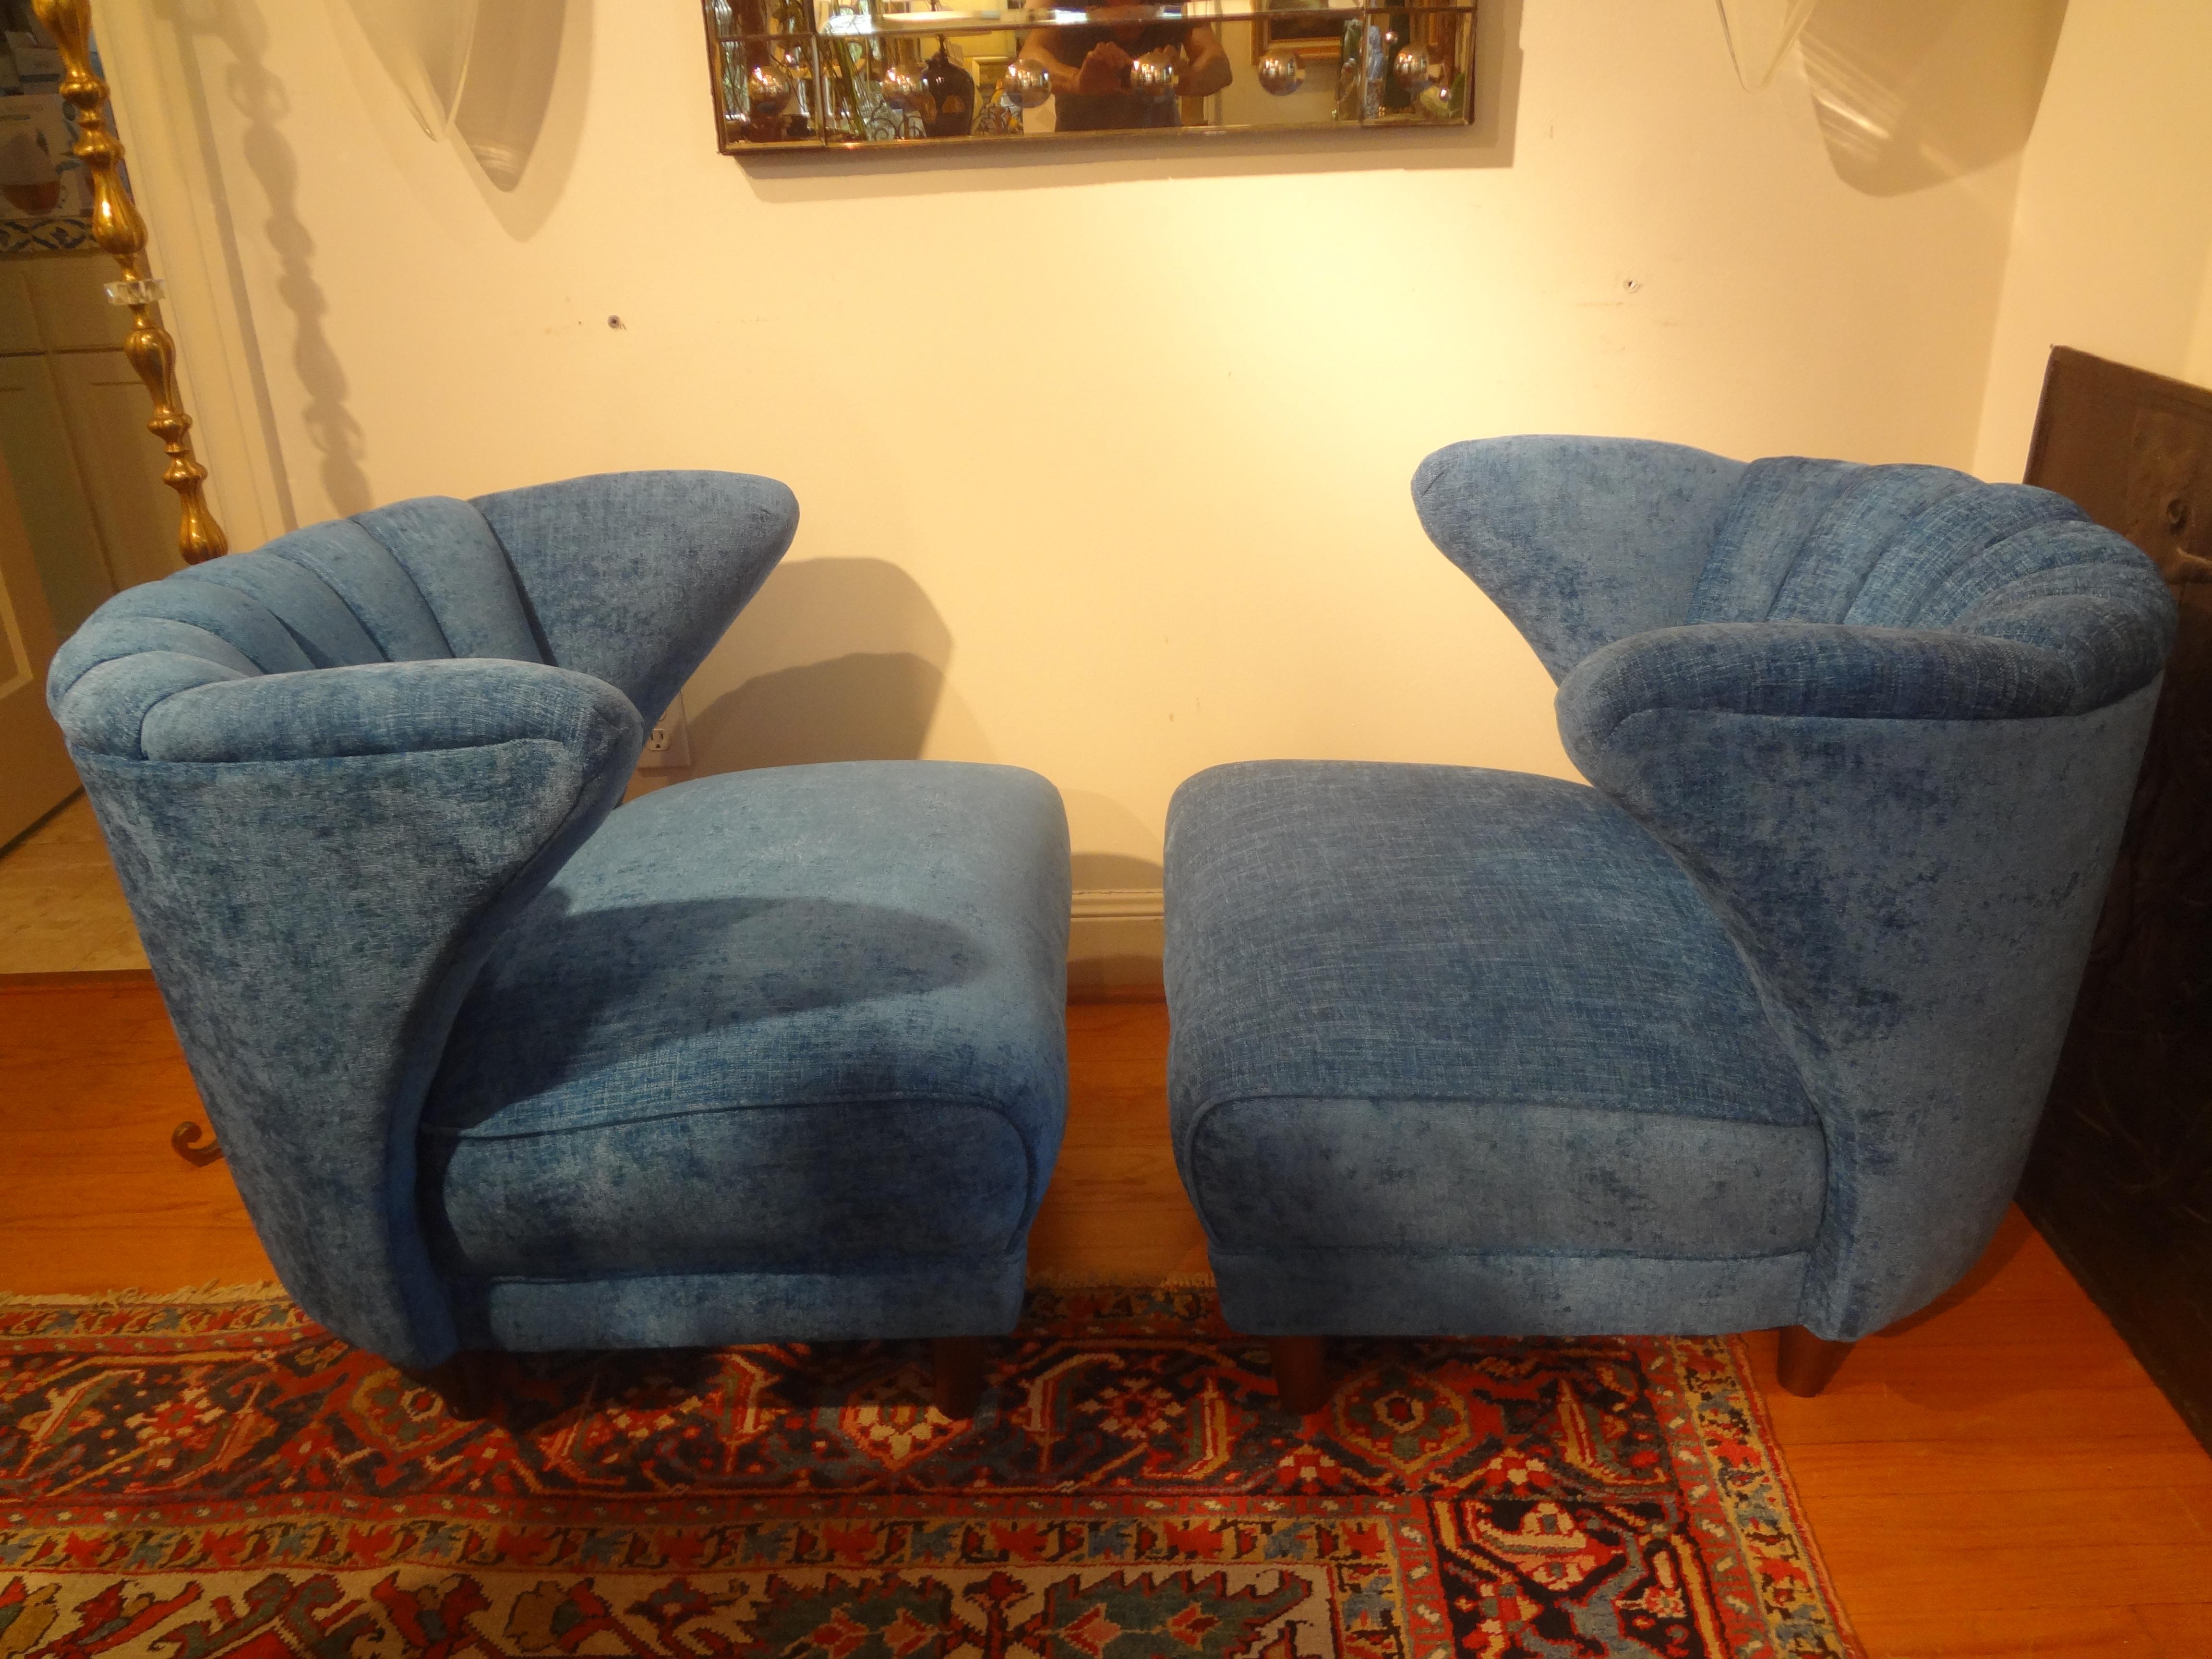 Paire de chaises longues modernes du milieu du siècle par Karpen Of California.
Cette paire sculpturale de chaises longues modernes du milieu du siècle est recouverte d'une magnifique teinte de chenille bleue.
Ce magnifique design se prête à une